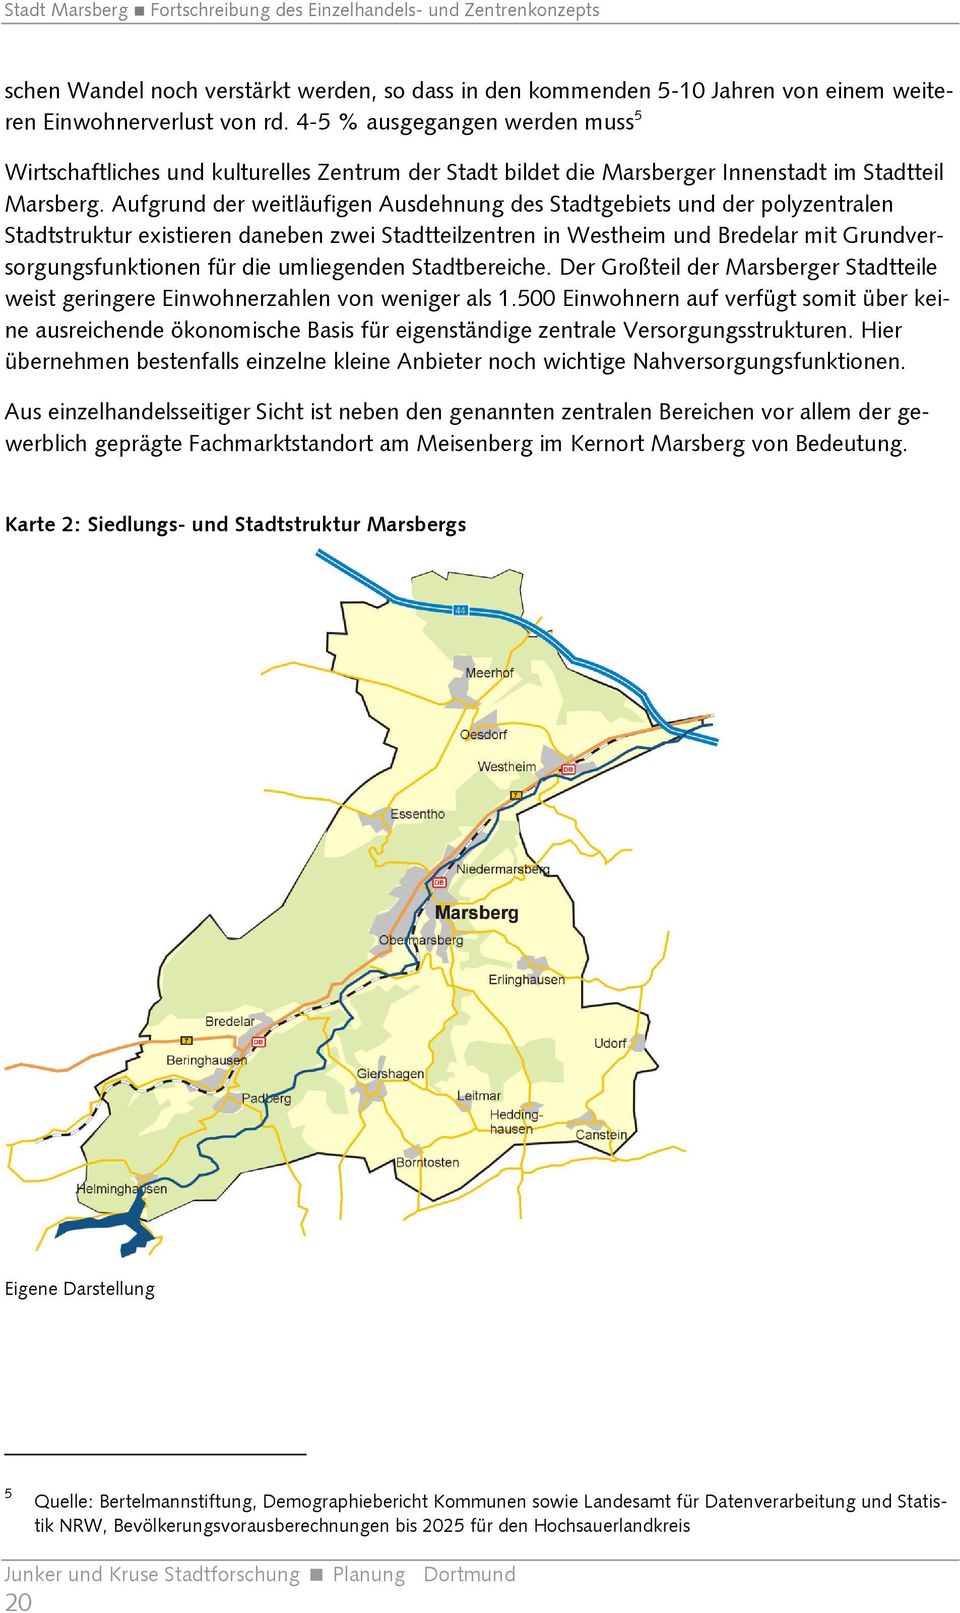 Aufgrund der weitläufigen Ausdehnung des Stadtgebiets und der polyzentralen Stadtstruktur existieren daneben zwei Stadtteilzentren in Westheim und Bredelar mit Grundversorgungsfunktionen für die